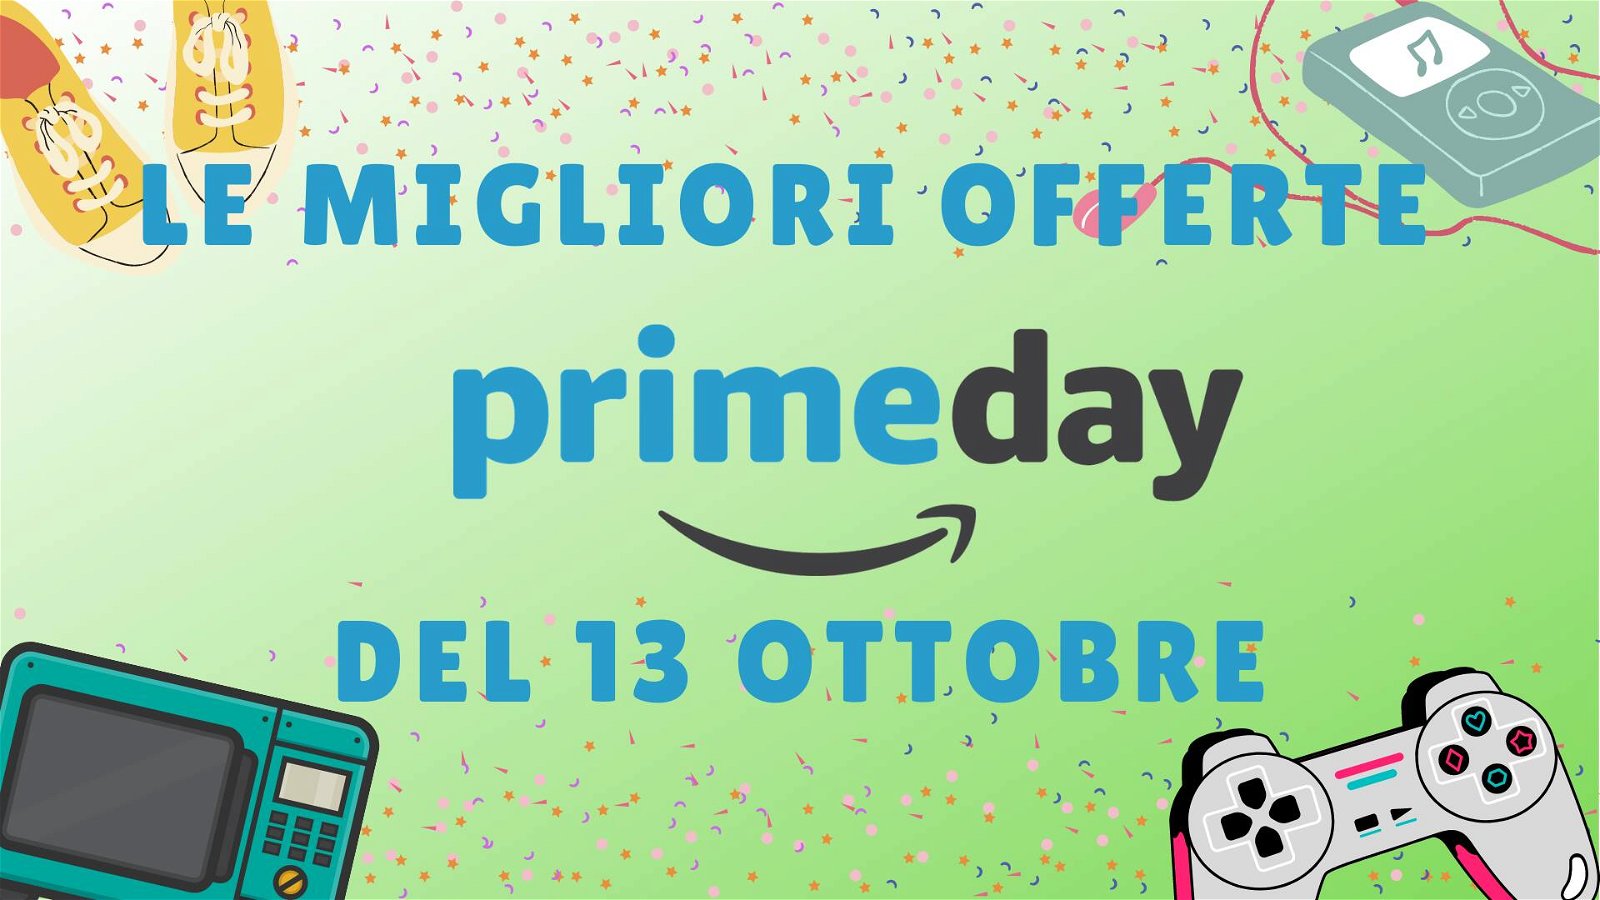 Immagine di Amazon Prime Day 2020: le migliori offerte del 13 ottobre